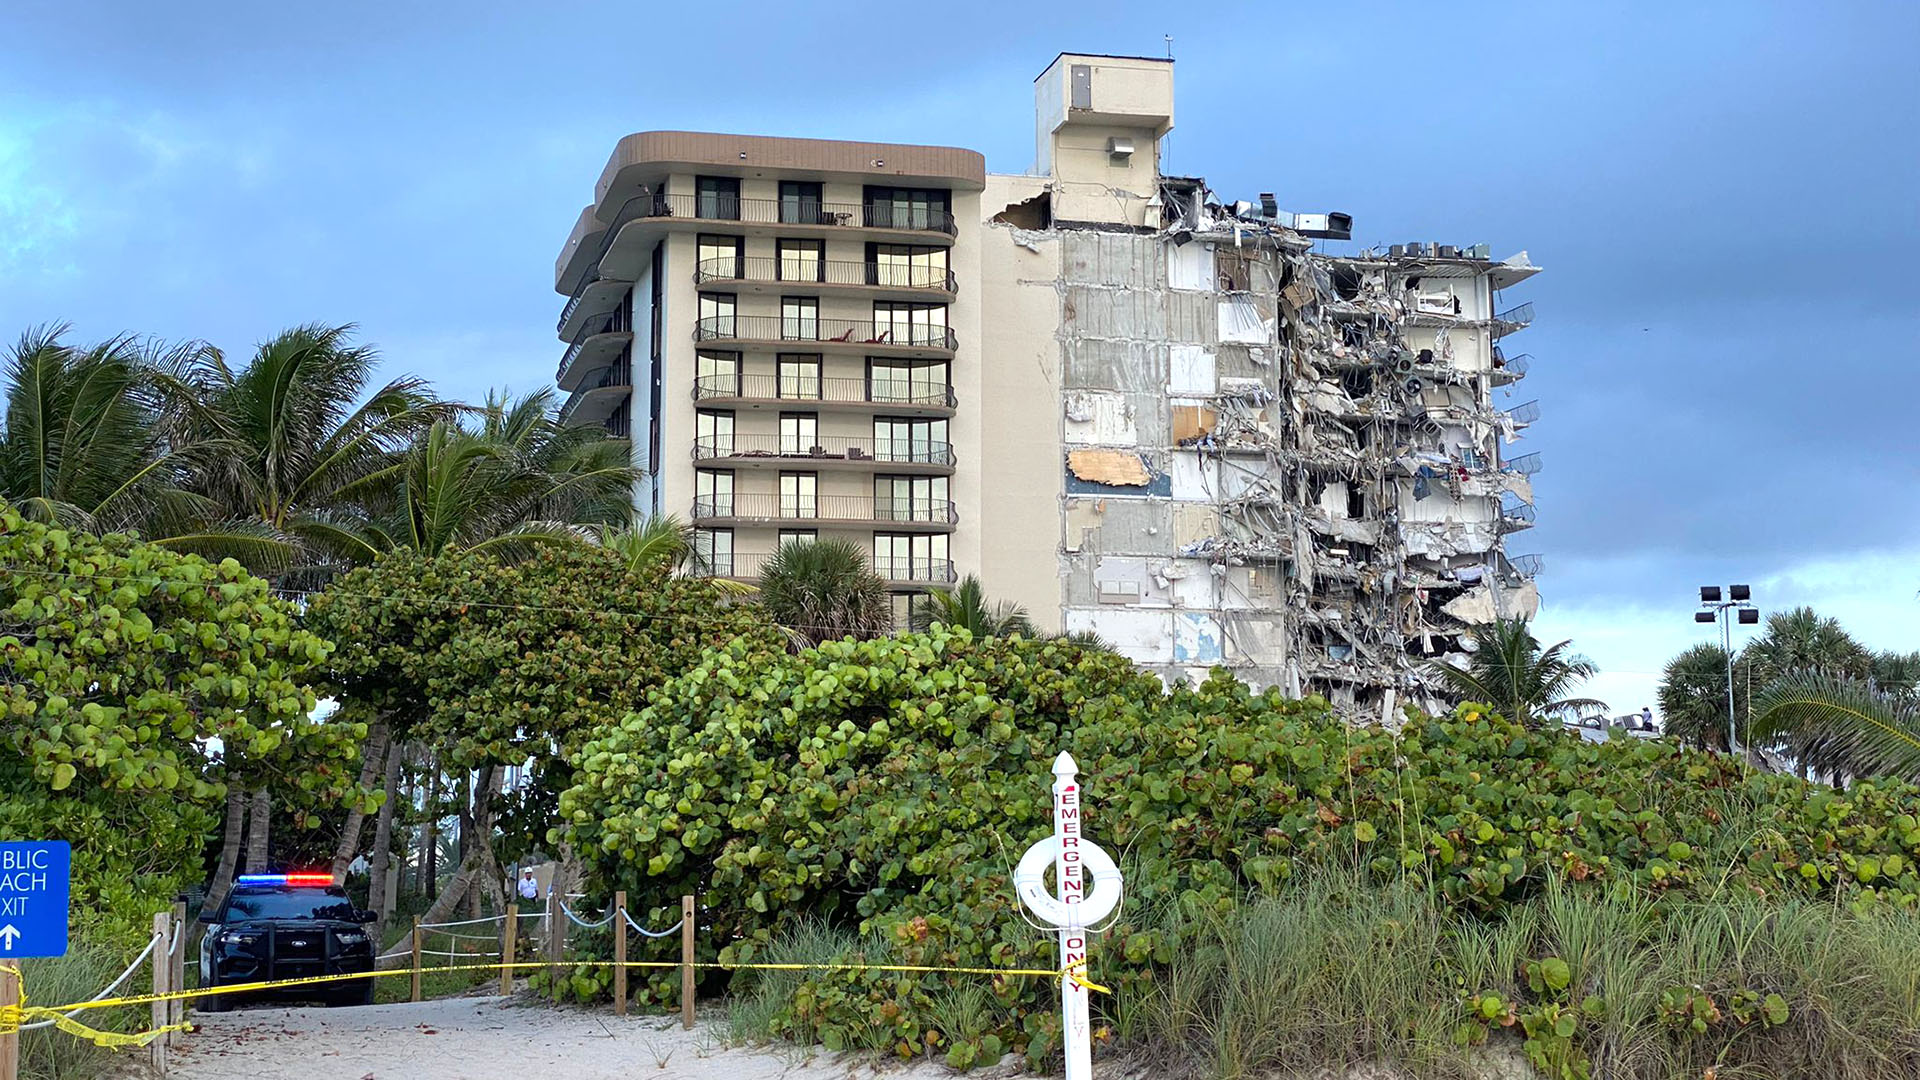 Se derrumbó un edificio residencial en Miami: al menos un muerto y 99  desaparecidos - Infobae